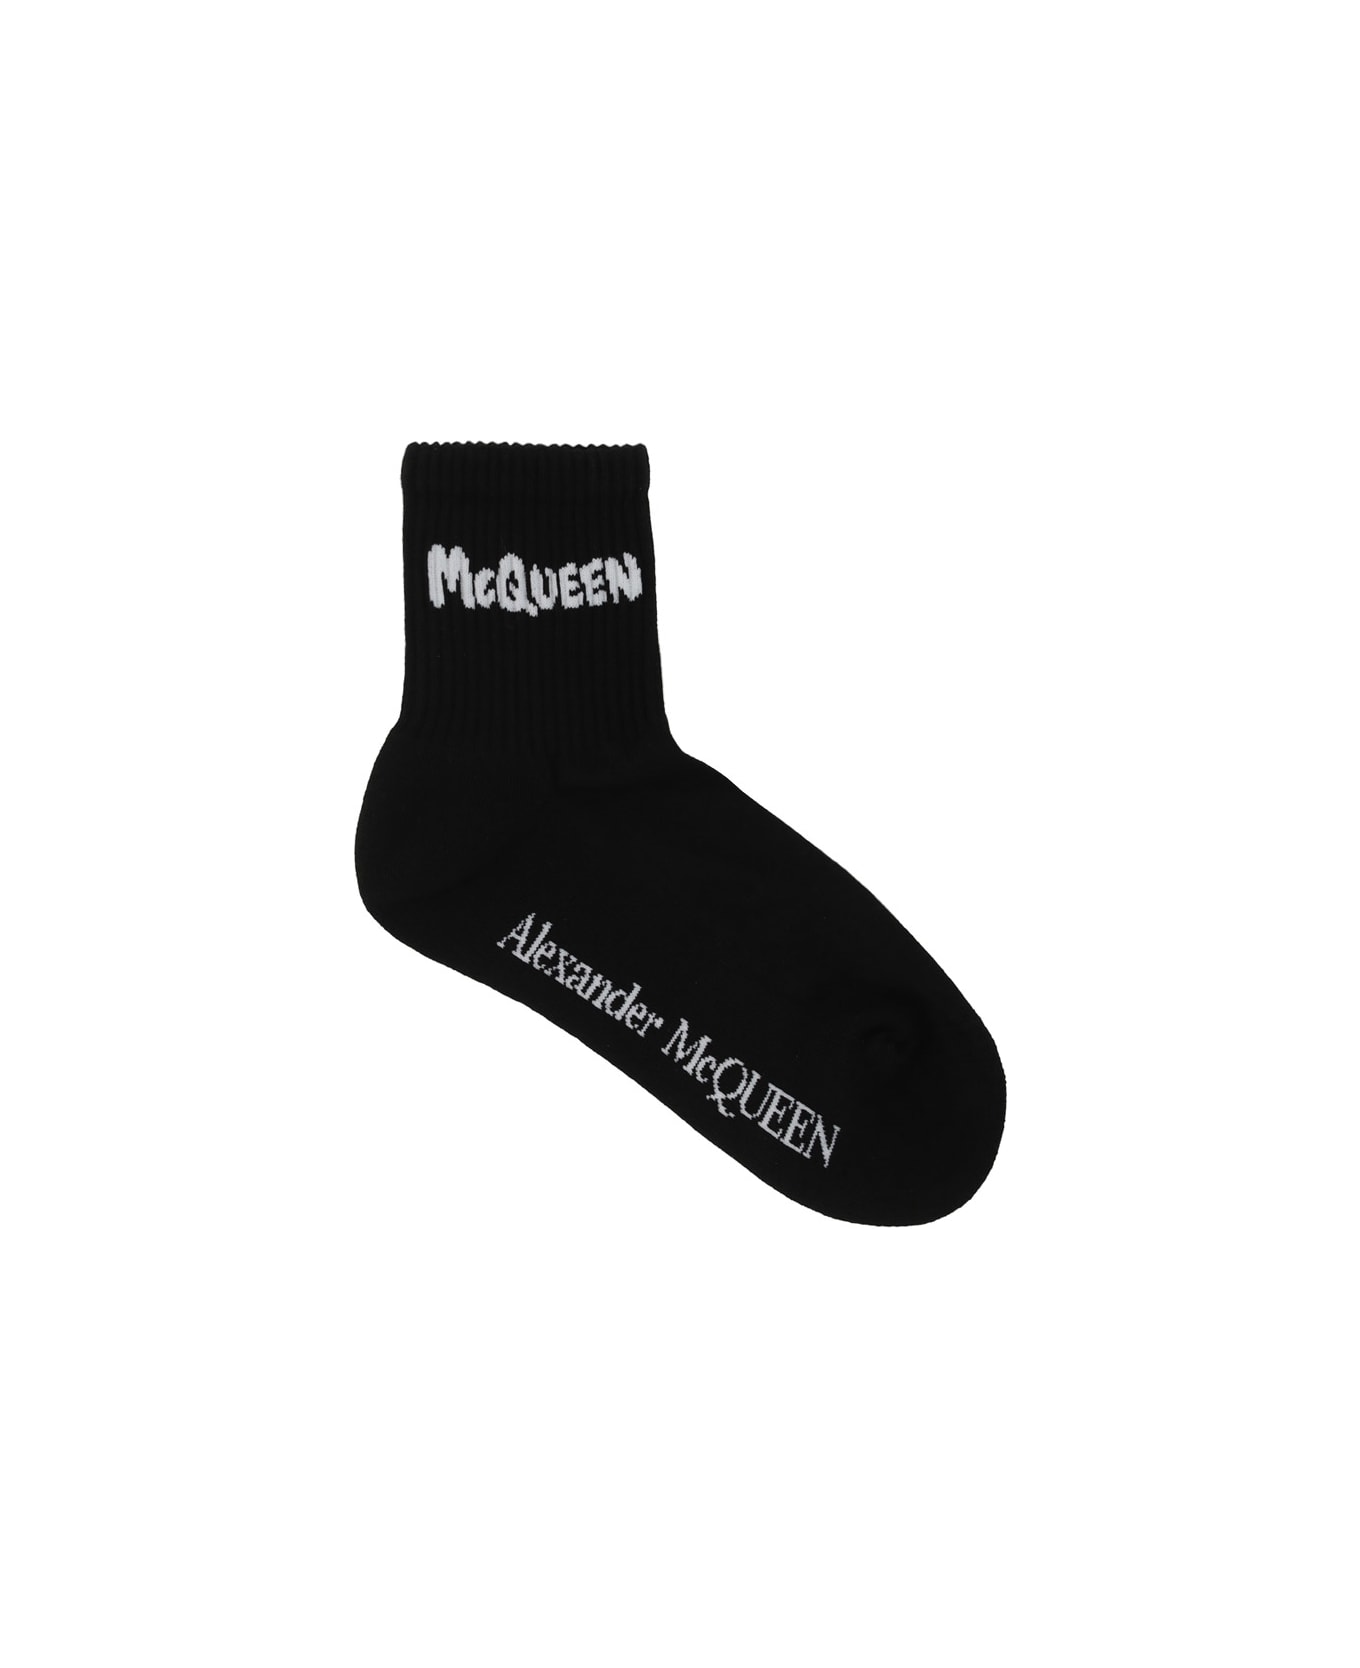 Alexander McQueen ruffle-detail Socks - Black/white